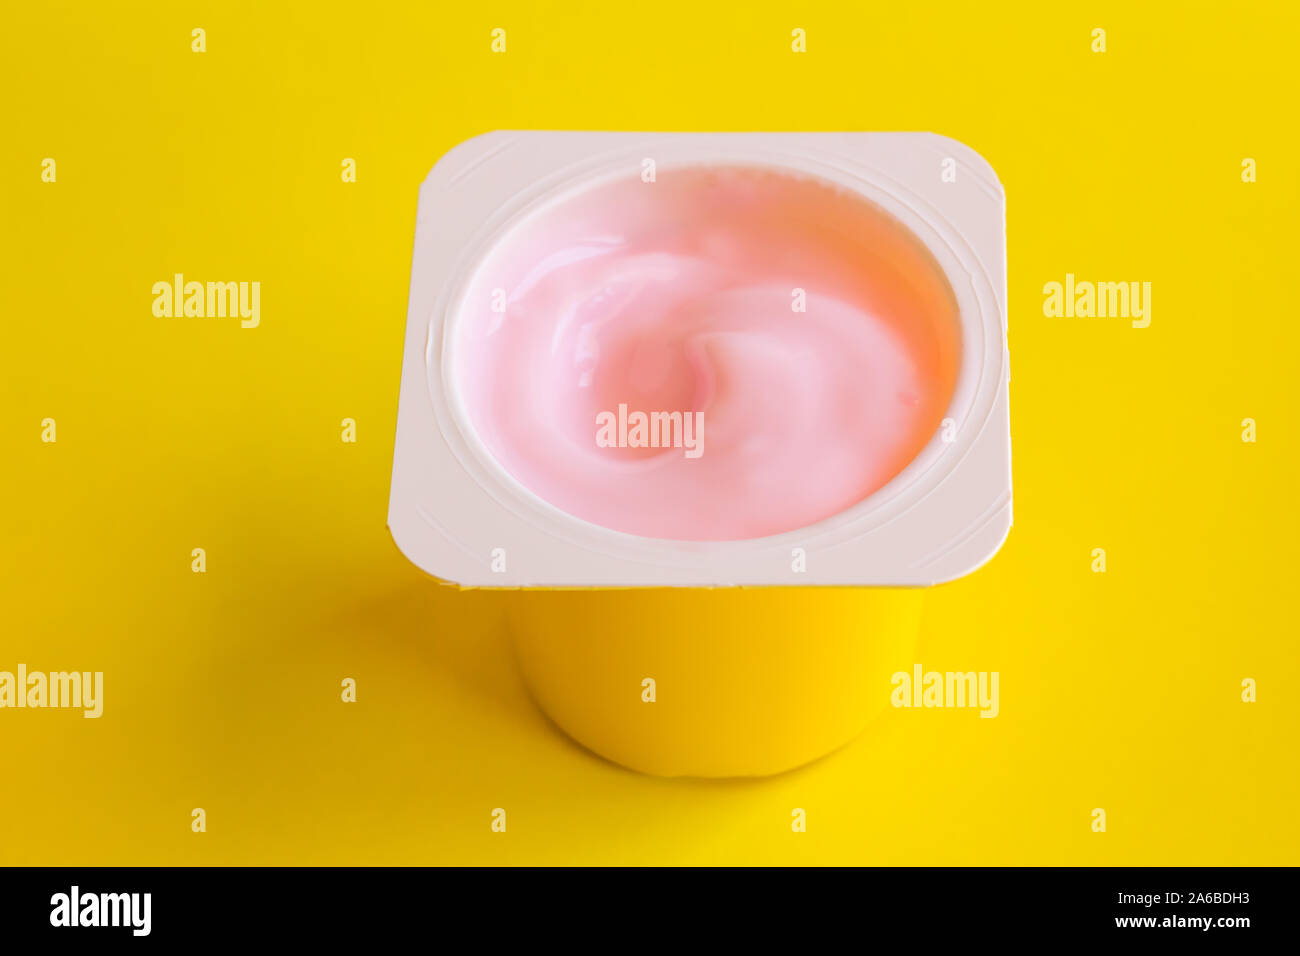 Strawberrry rosa Joghurt in gelb Plastikbecher auf gelben Hintergrund mit Leerzeichen getrennt für Text Stockfoto